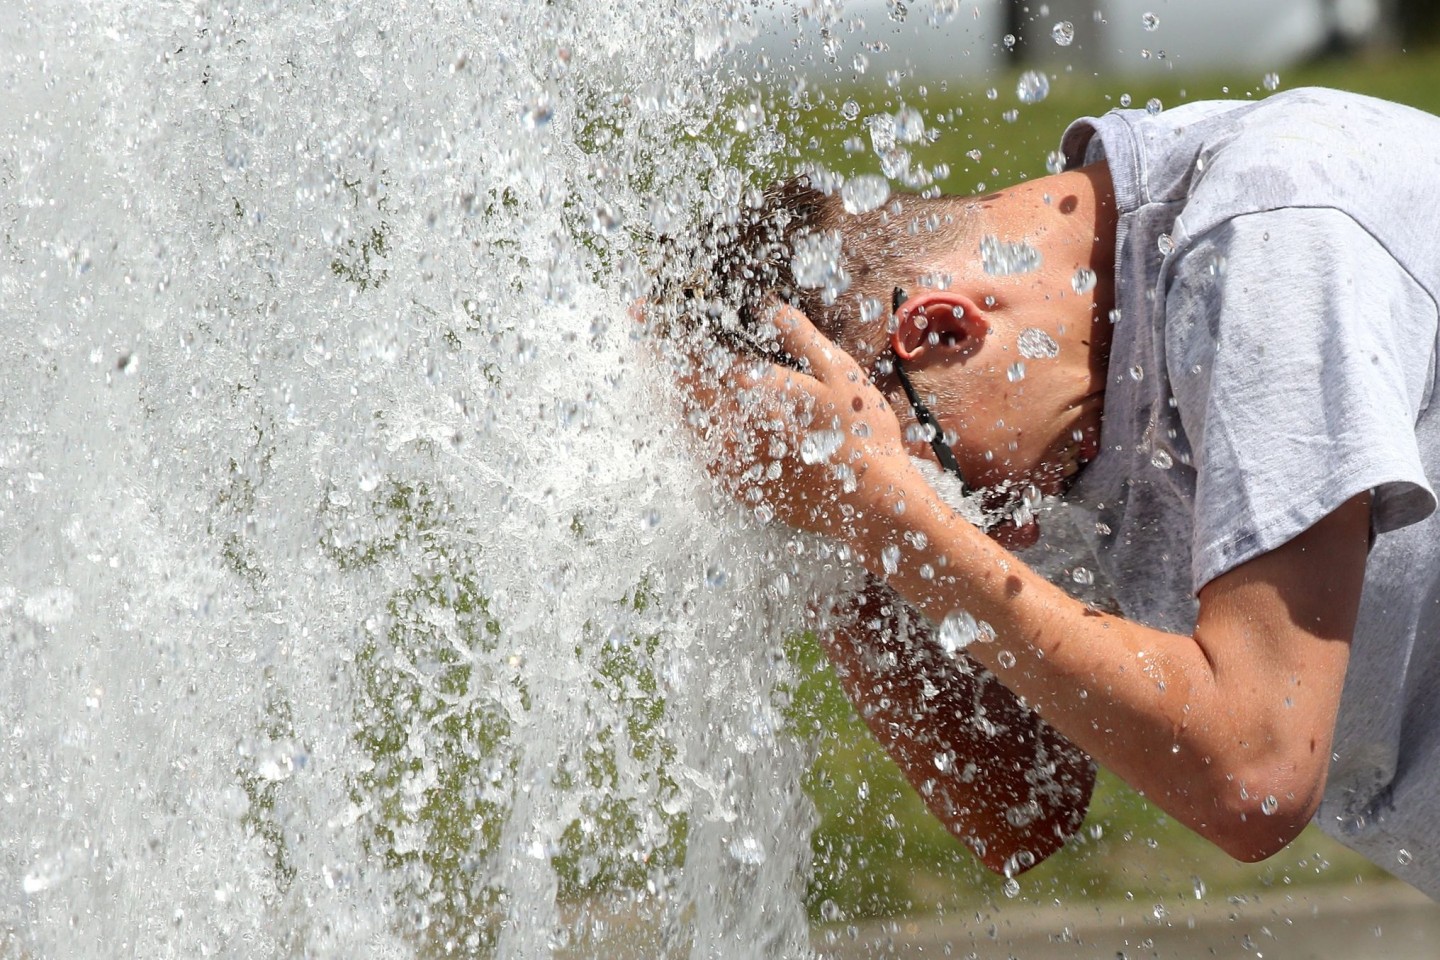 Bei Temperaturen um 29 Grad Celsius erfrischt sich ein junger Mann im Berliner Lustgarten am Wasser eines Brunnens.